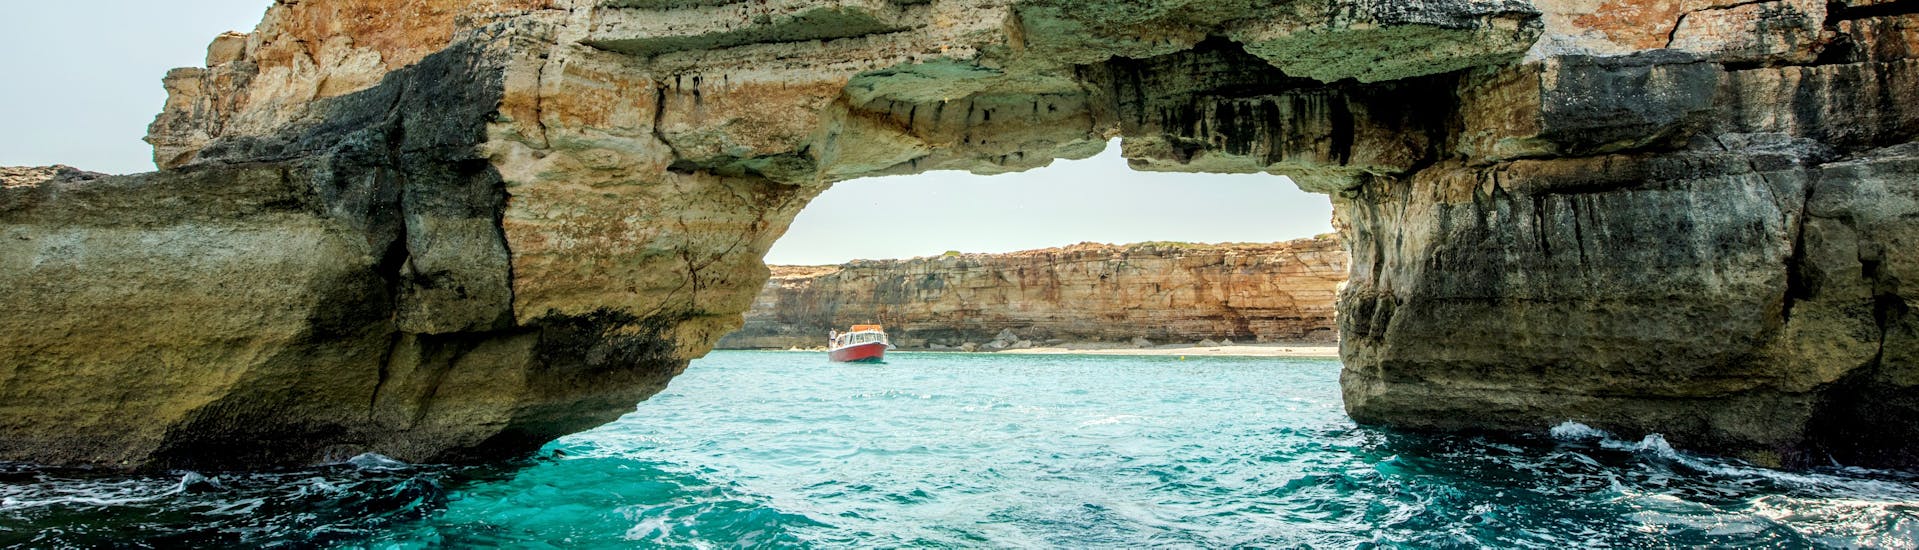 Vista dalla barca durante la gita in barca da Rethymno alle grotte dei pirati a Creta con Dolphin Cruises.